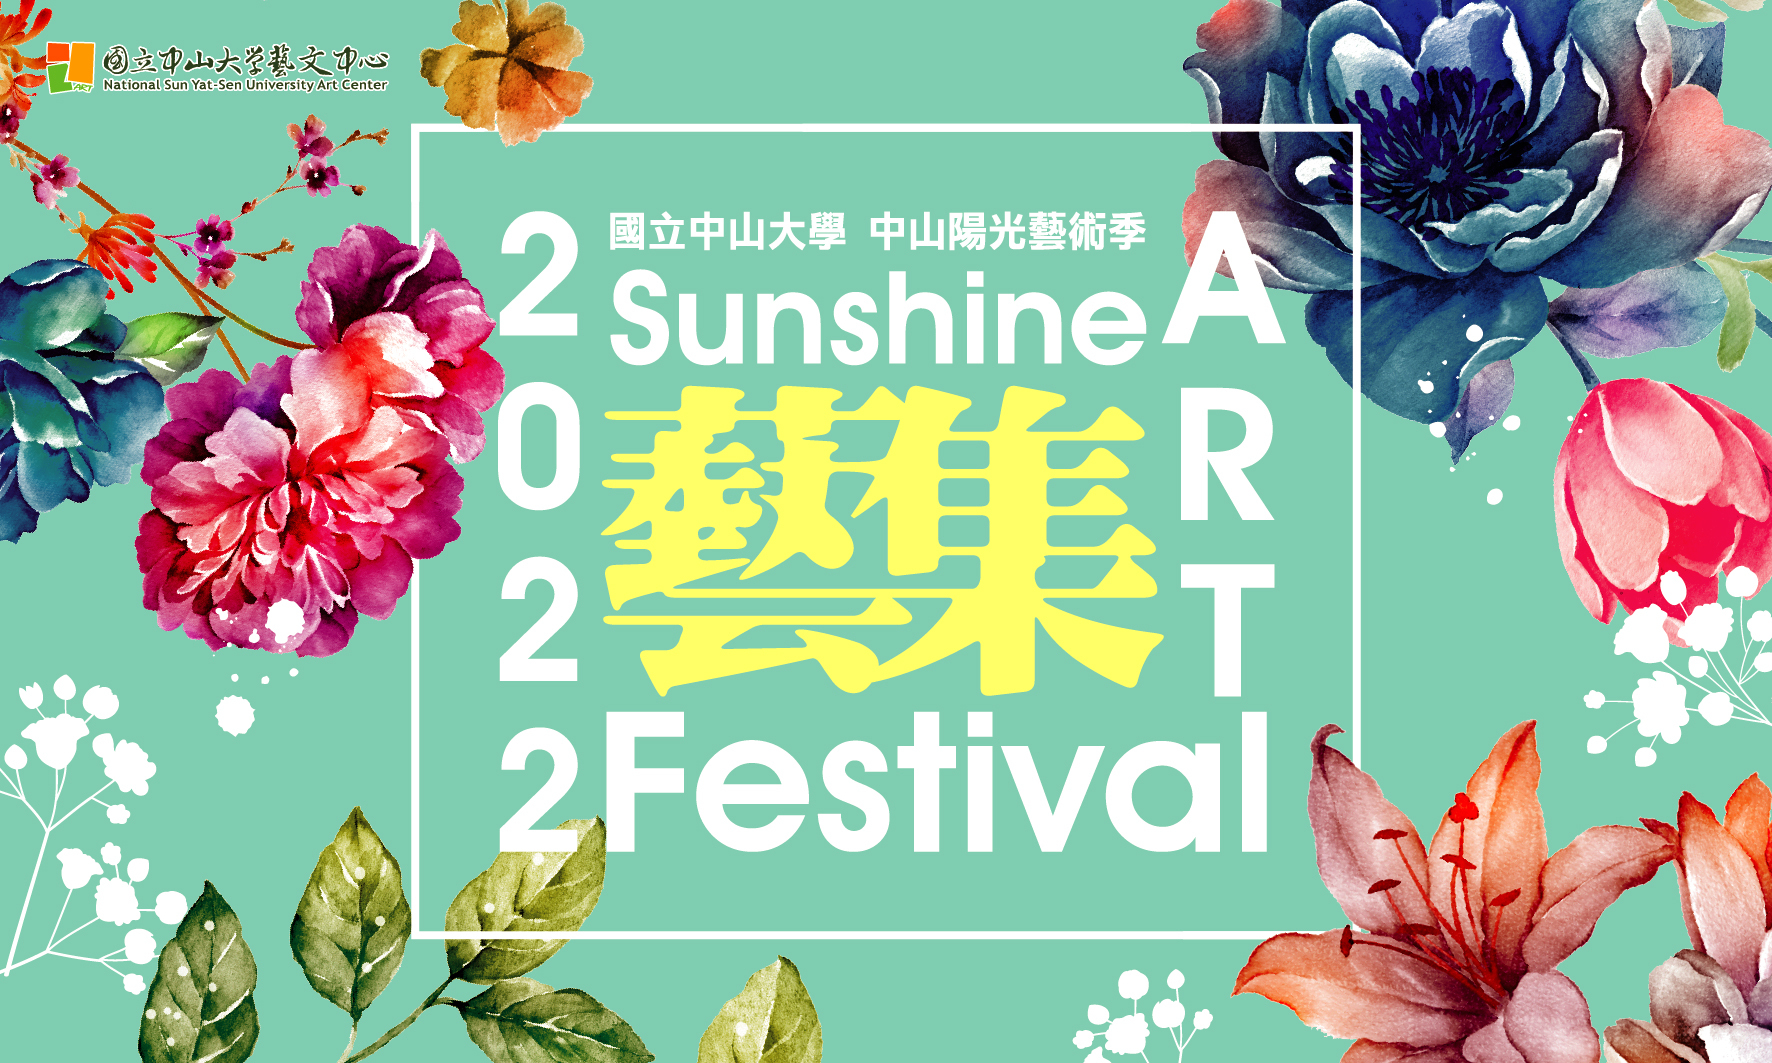 2022 Sunshine Art Festival starts now